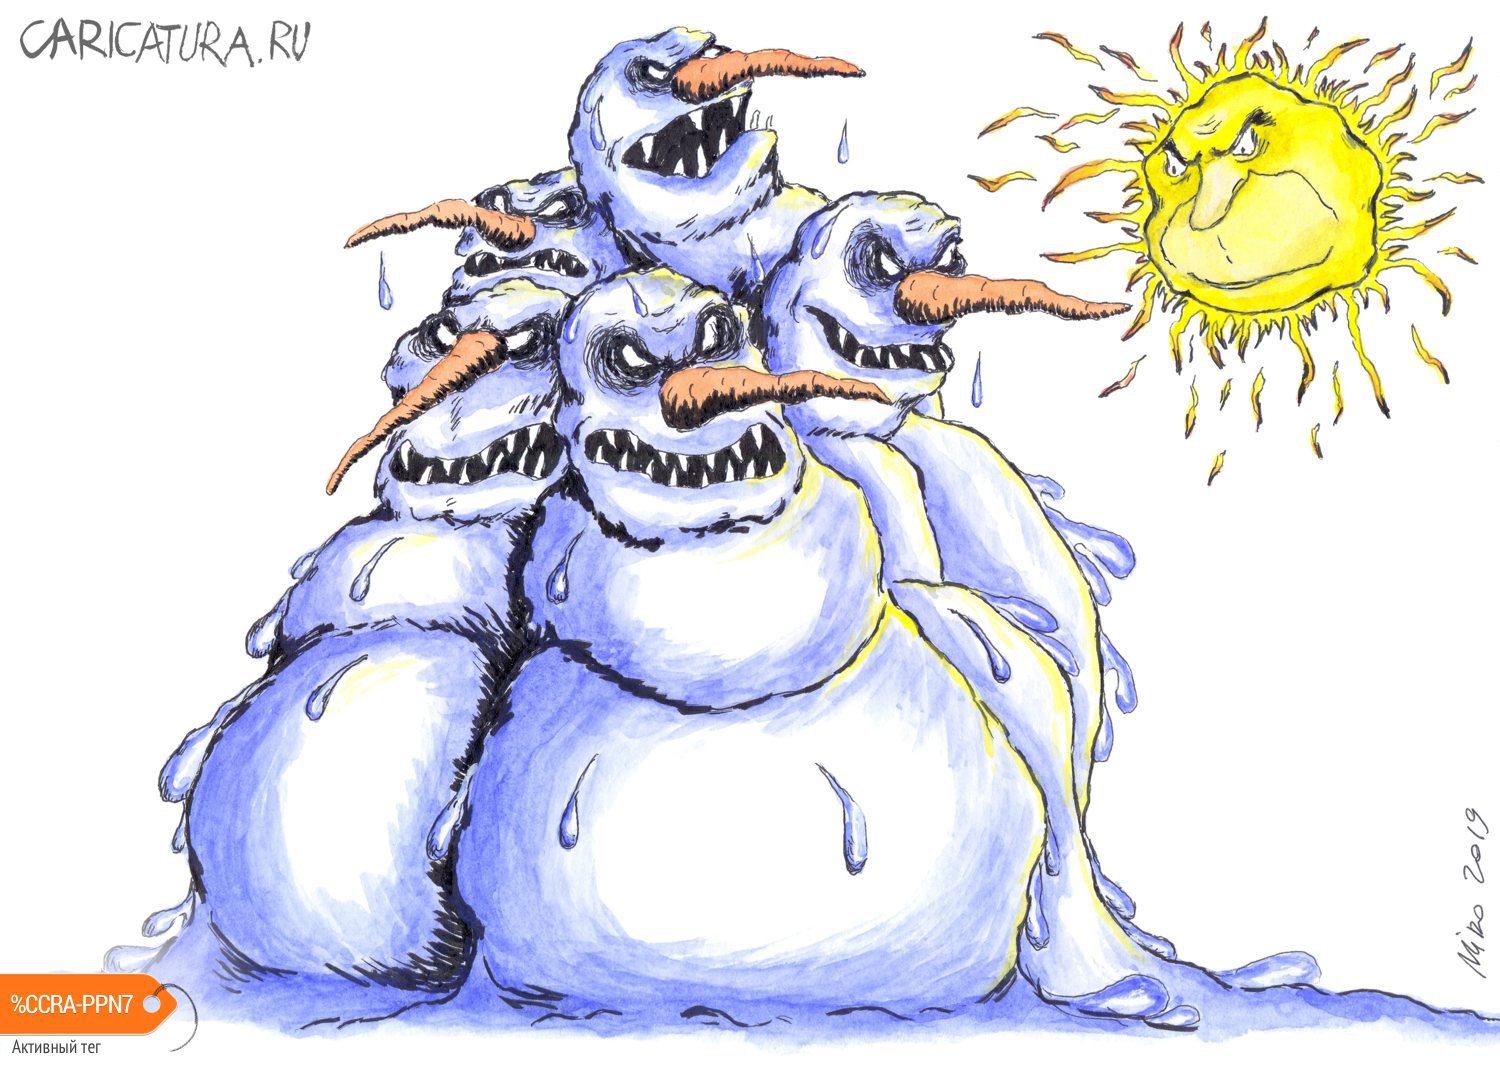 Карикатура "Последняя баррикада зимы", Игорь Мирошниченко